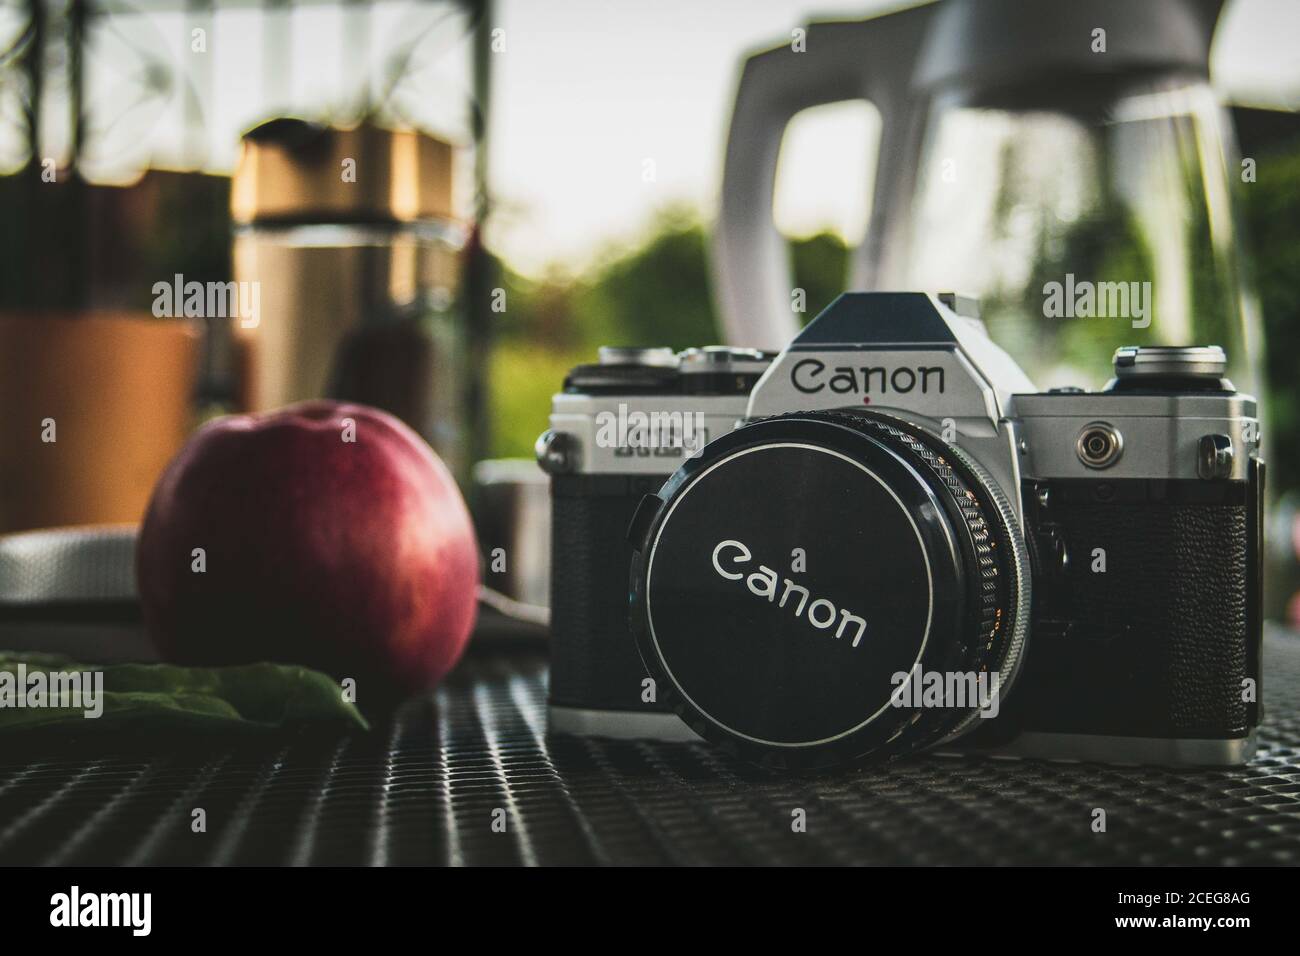 LAGE, 21. Jul 2020: Canon AE-1 Kamera neben einem Apfel und einigen Erbsen Stockfoto